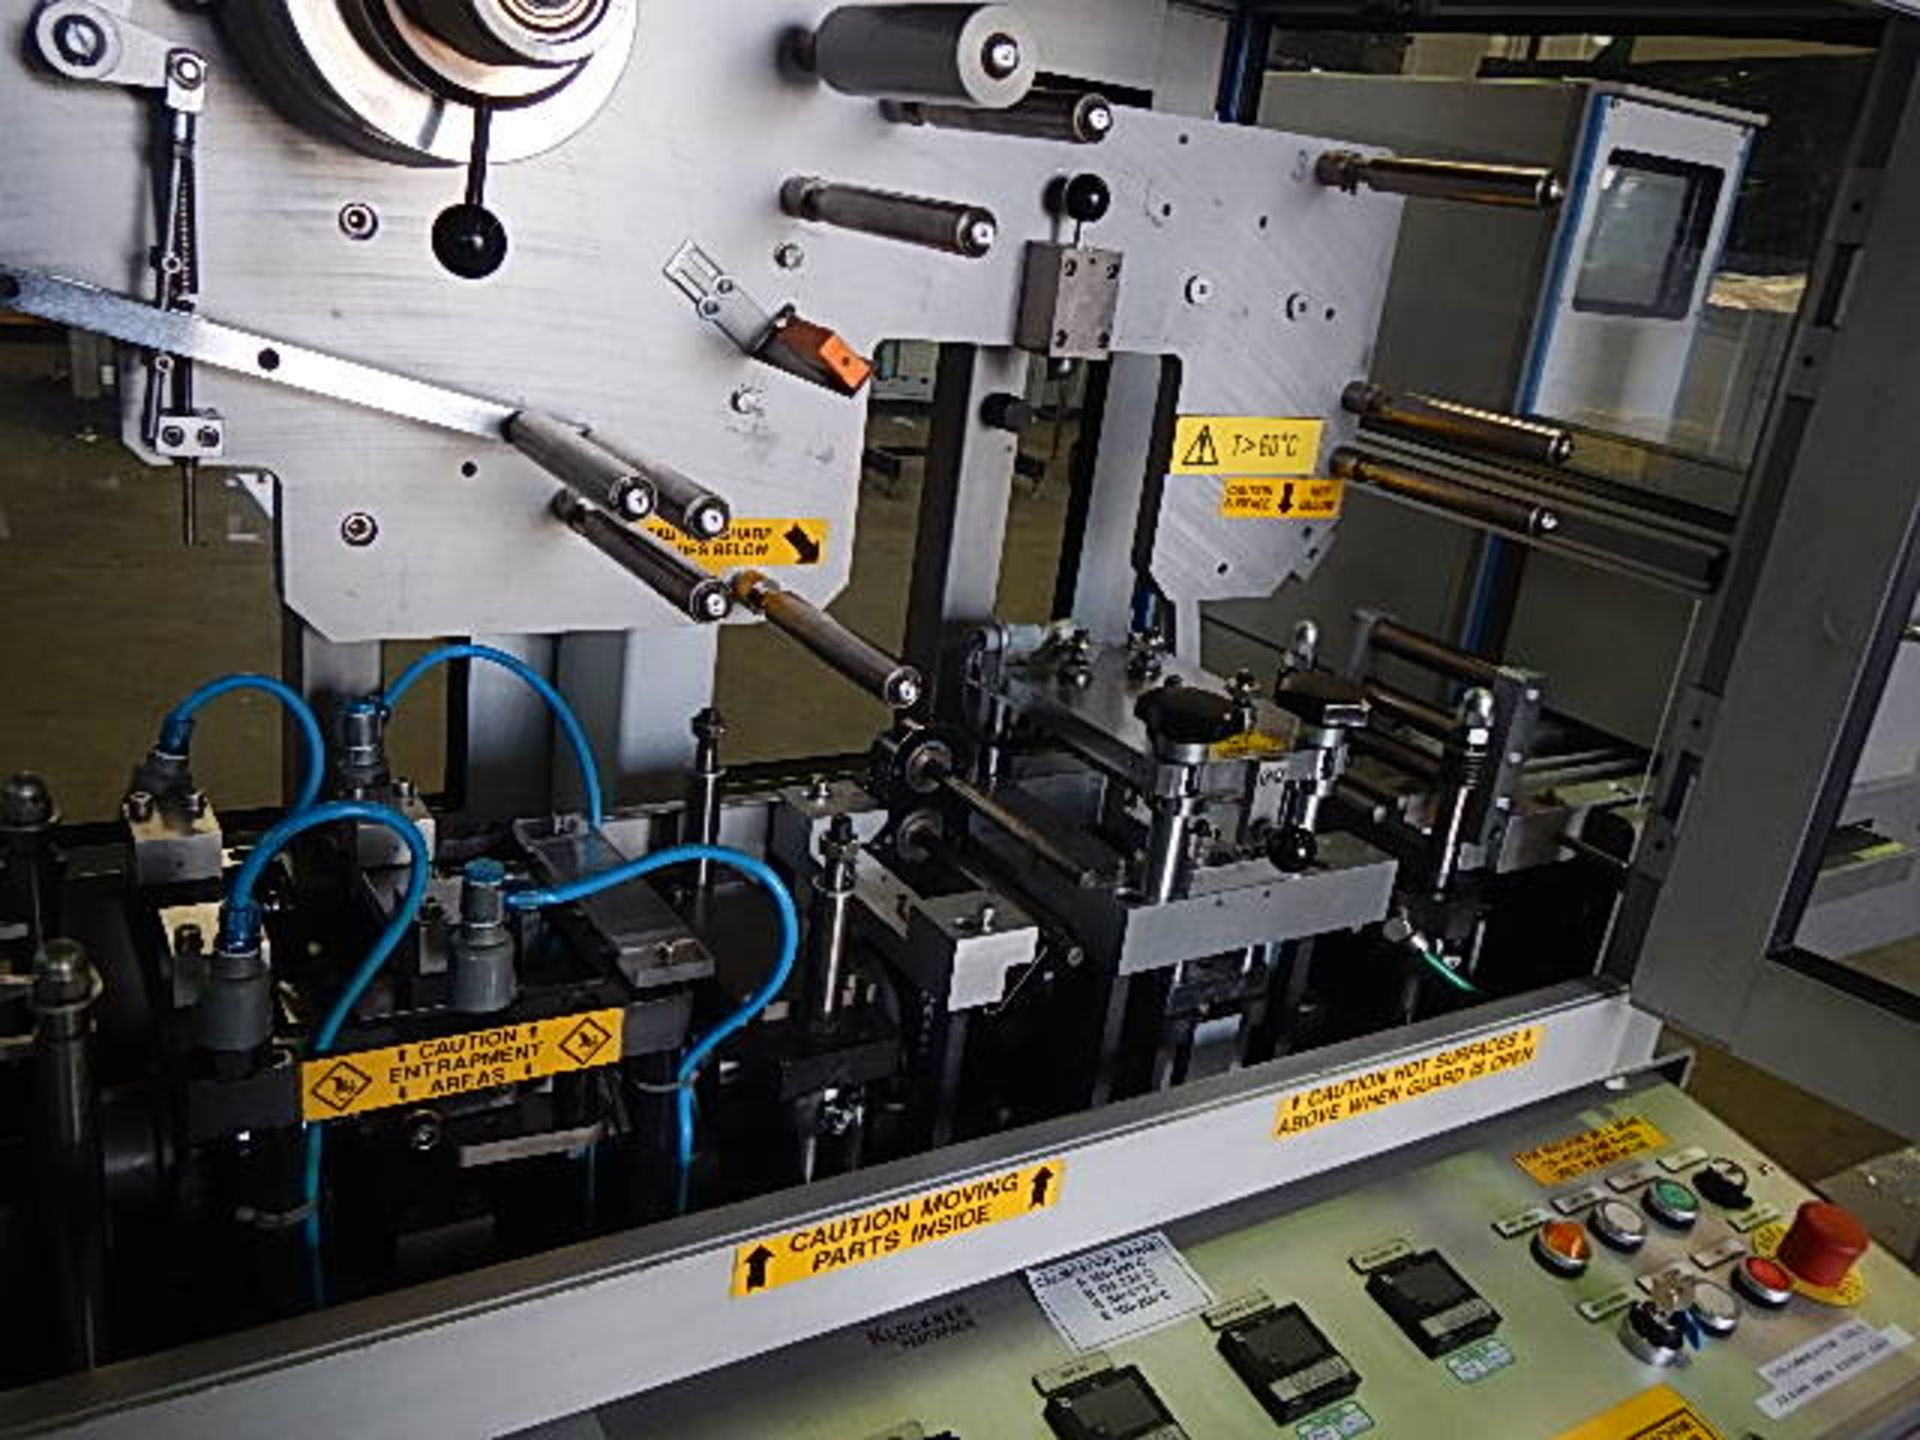 Klockner model EAS 1001 Unit-Dose blister packaging machine designed for pharmaceutical and - Image 16 of 25